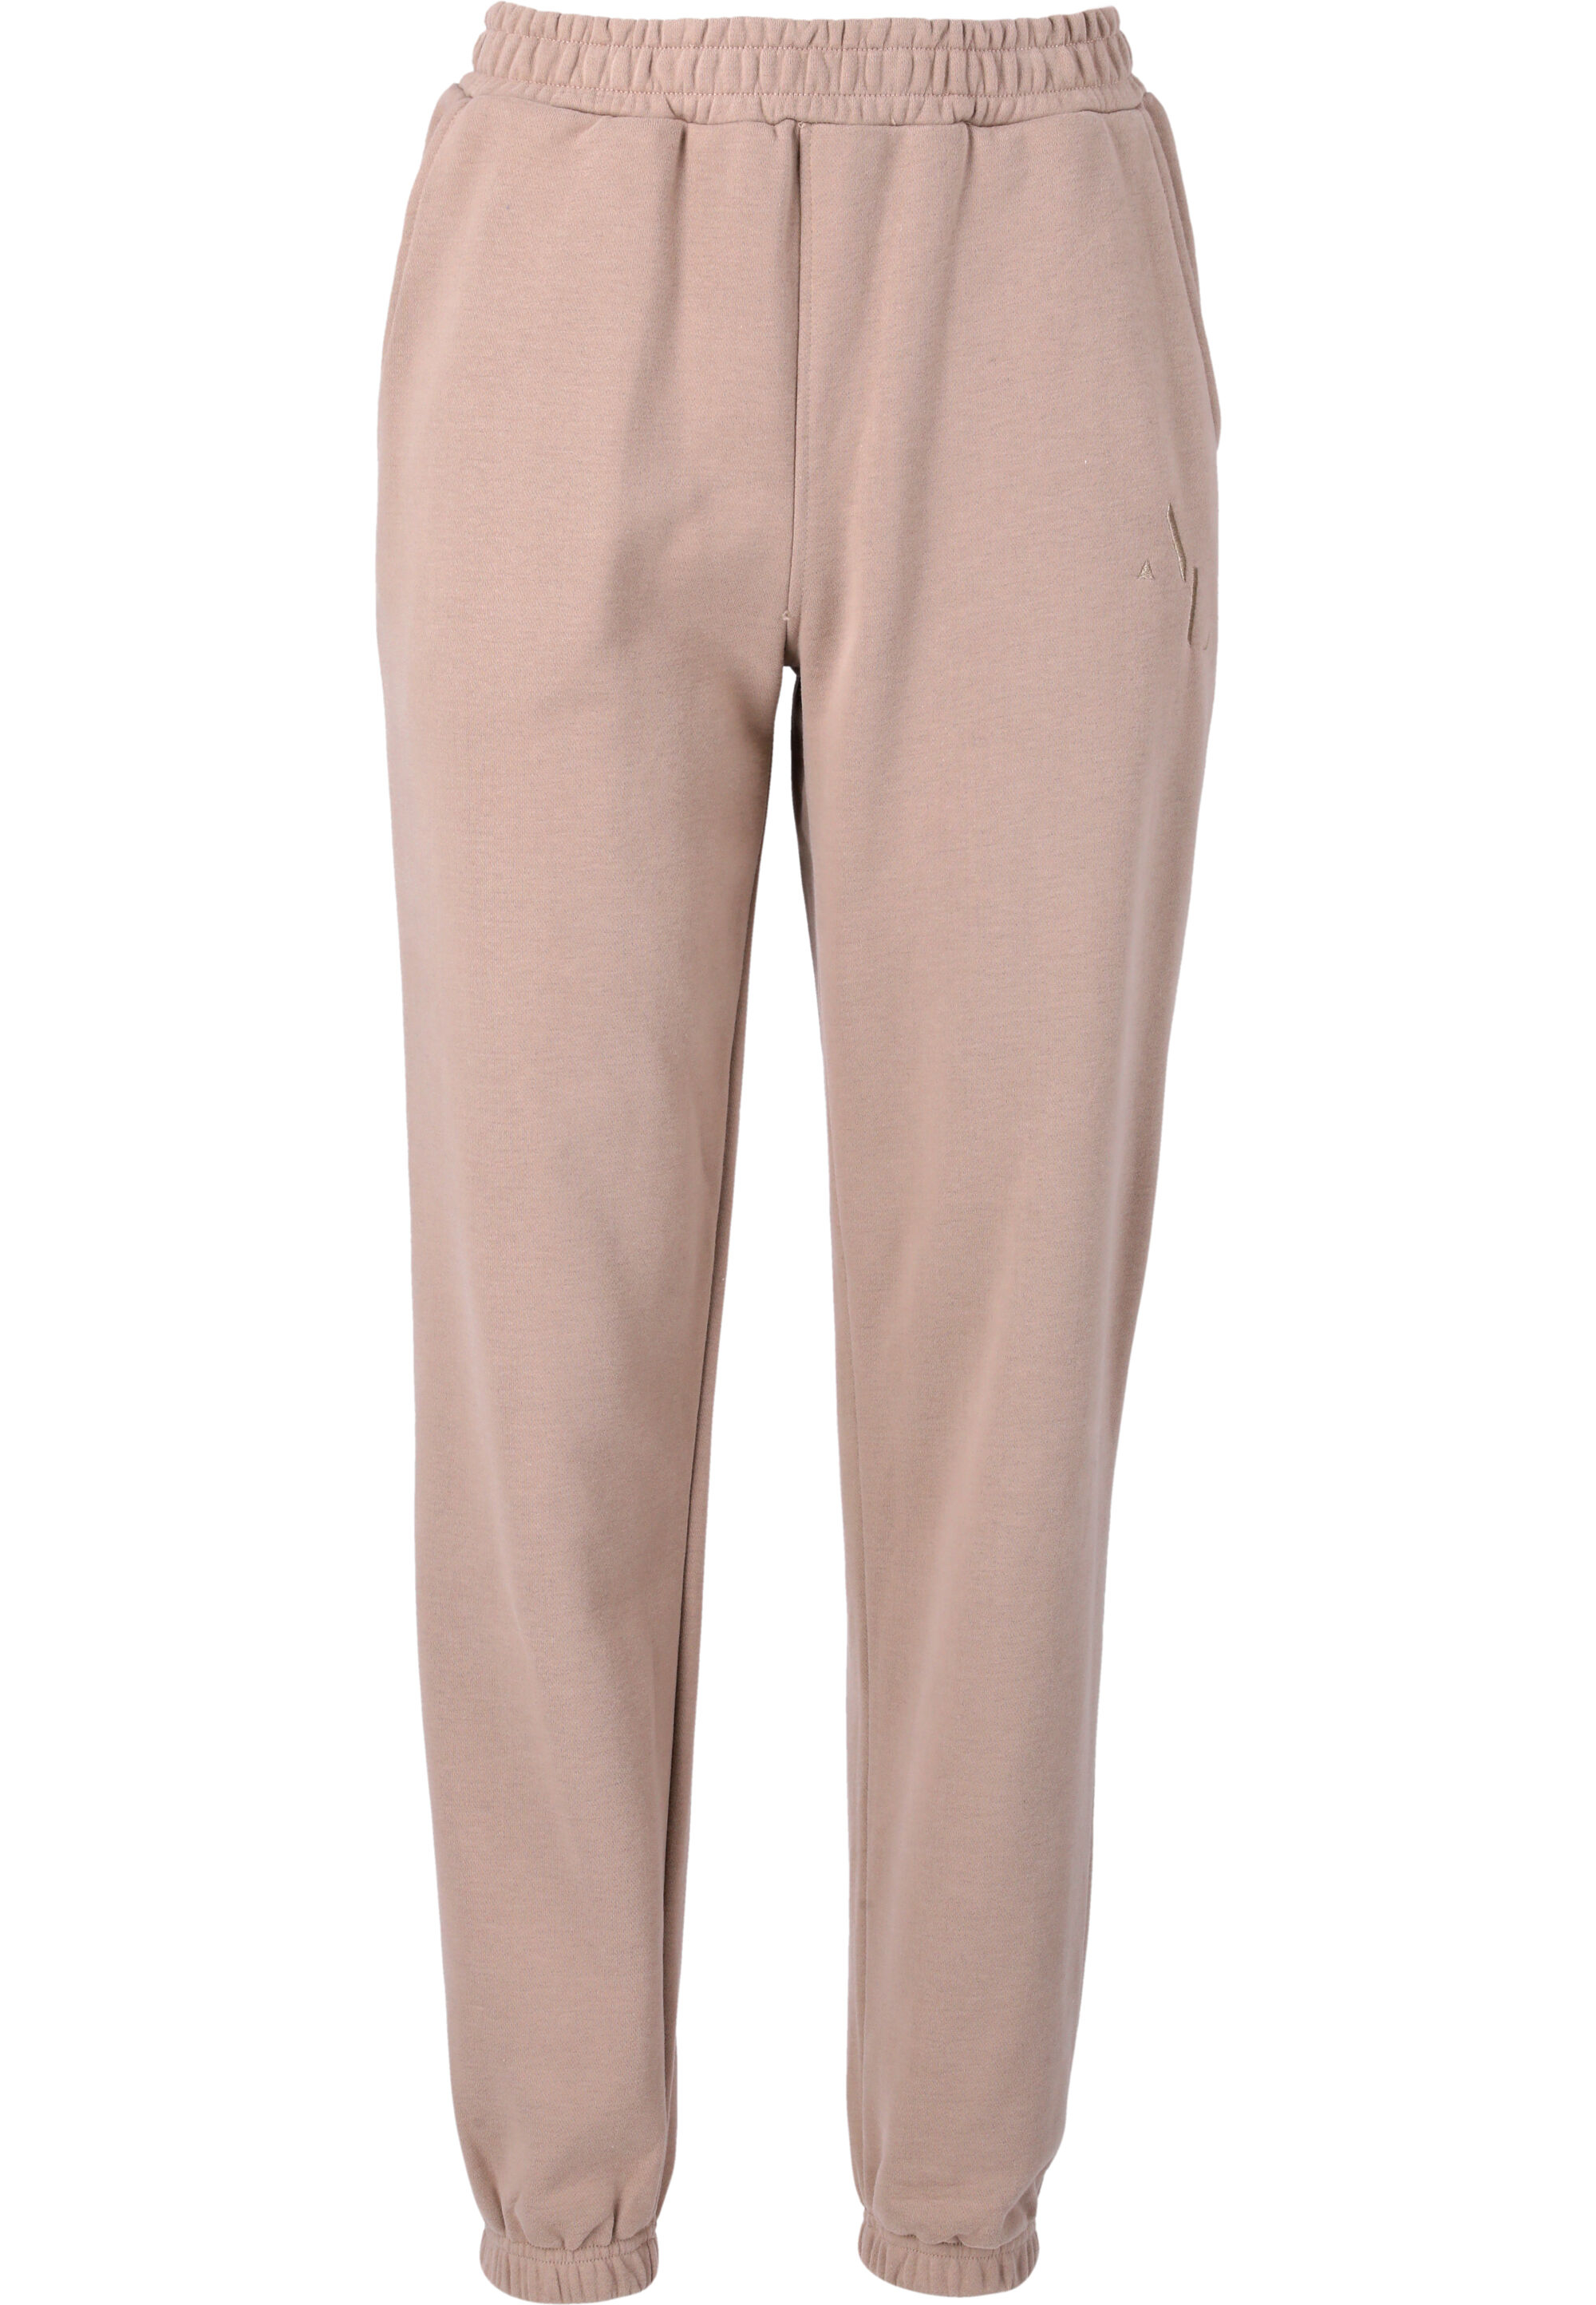 Спортивные брюки Athlecia Lia, цвет 1100 Atmosphere цена и фото